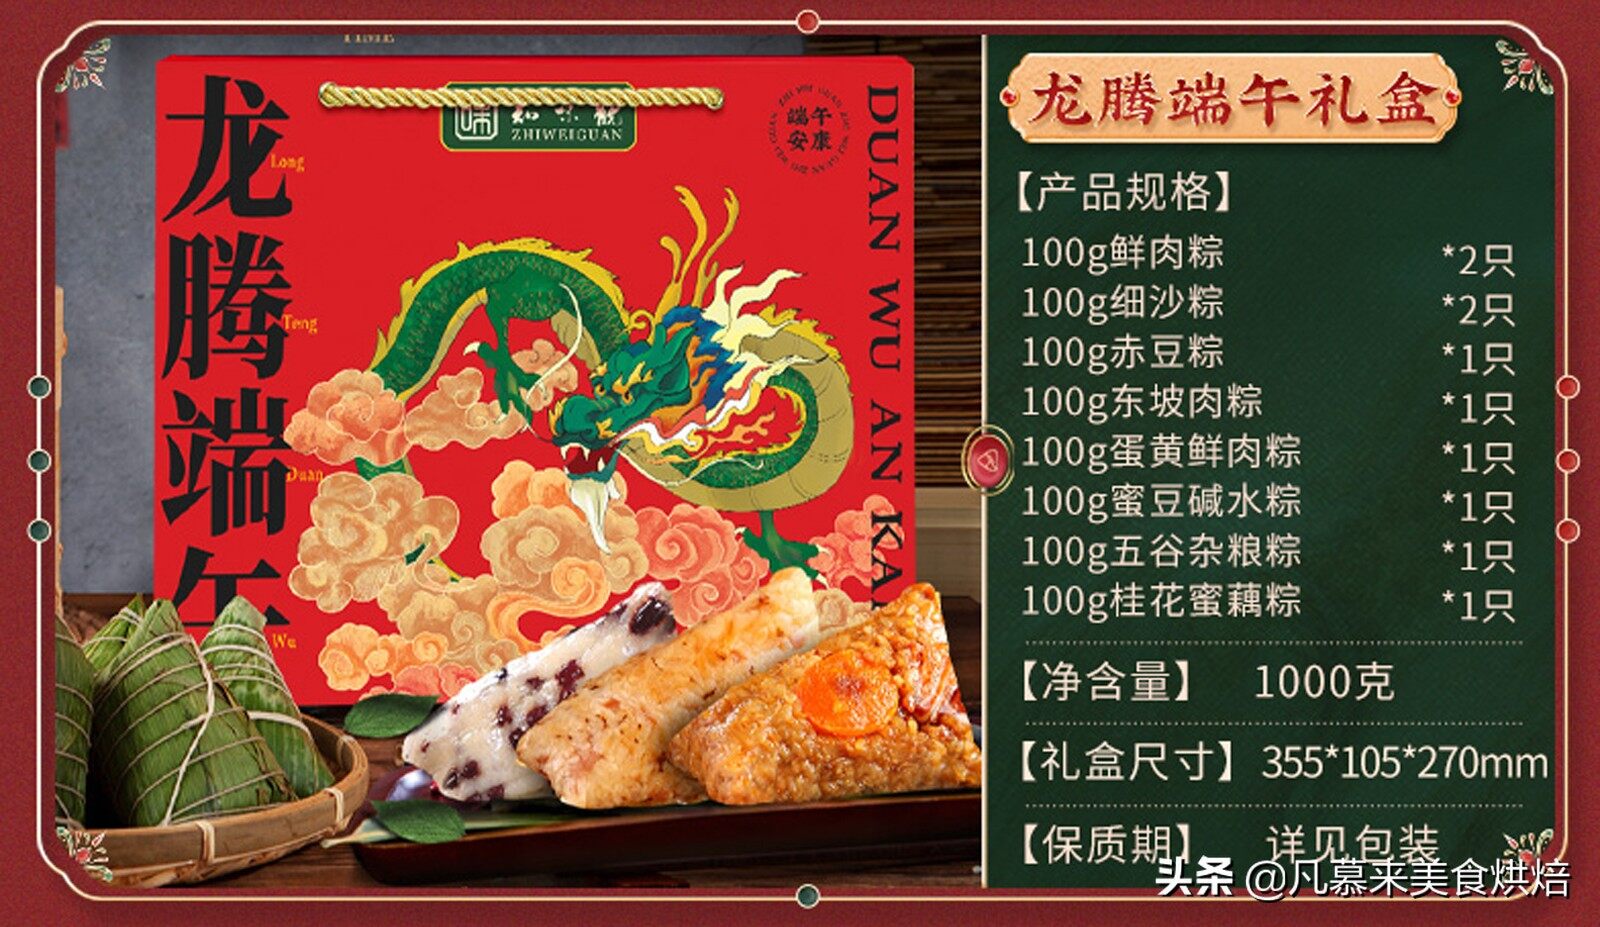 什么粽子好吃？哪种粽子销量高？盘点最受网友欢迎的10大粽子品牌